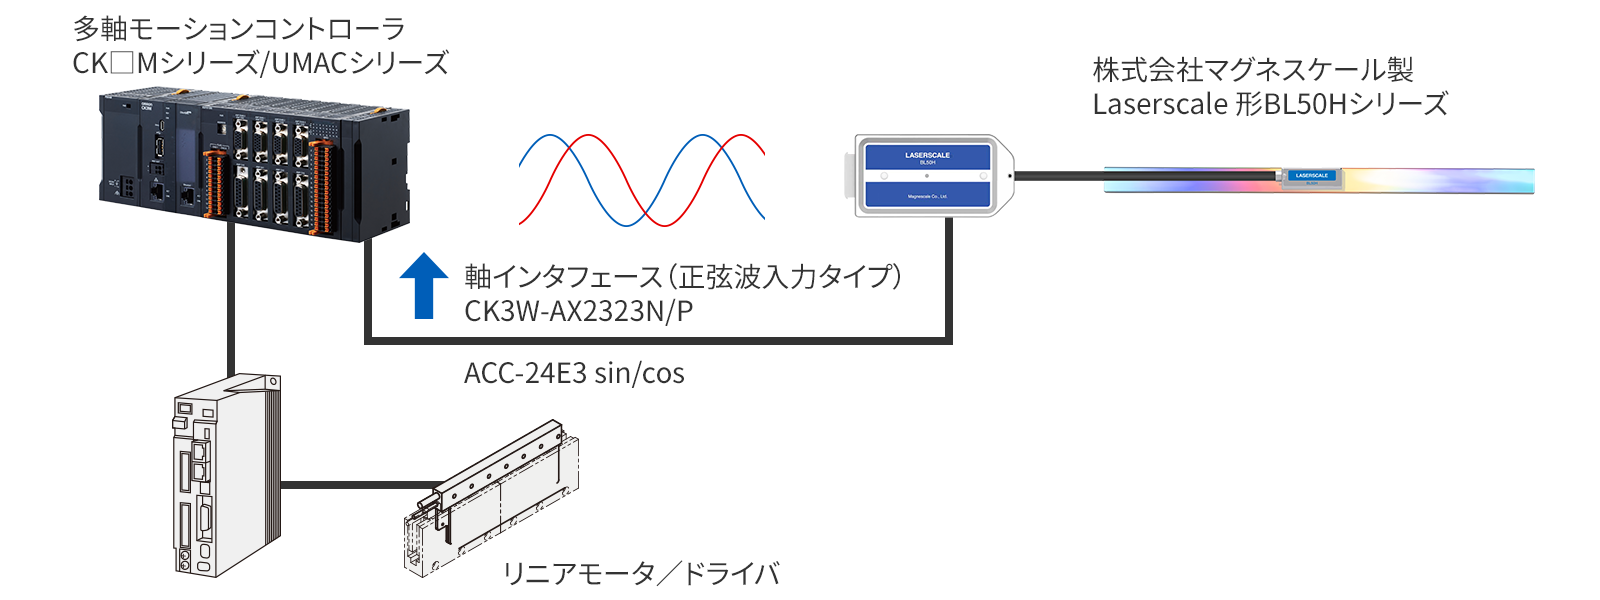 正弦波エンコーダ (1Vp-p)からのフィードバックによる、超高精度位置制御システム事例